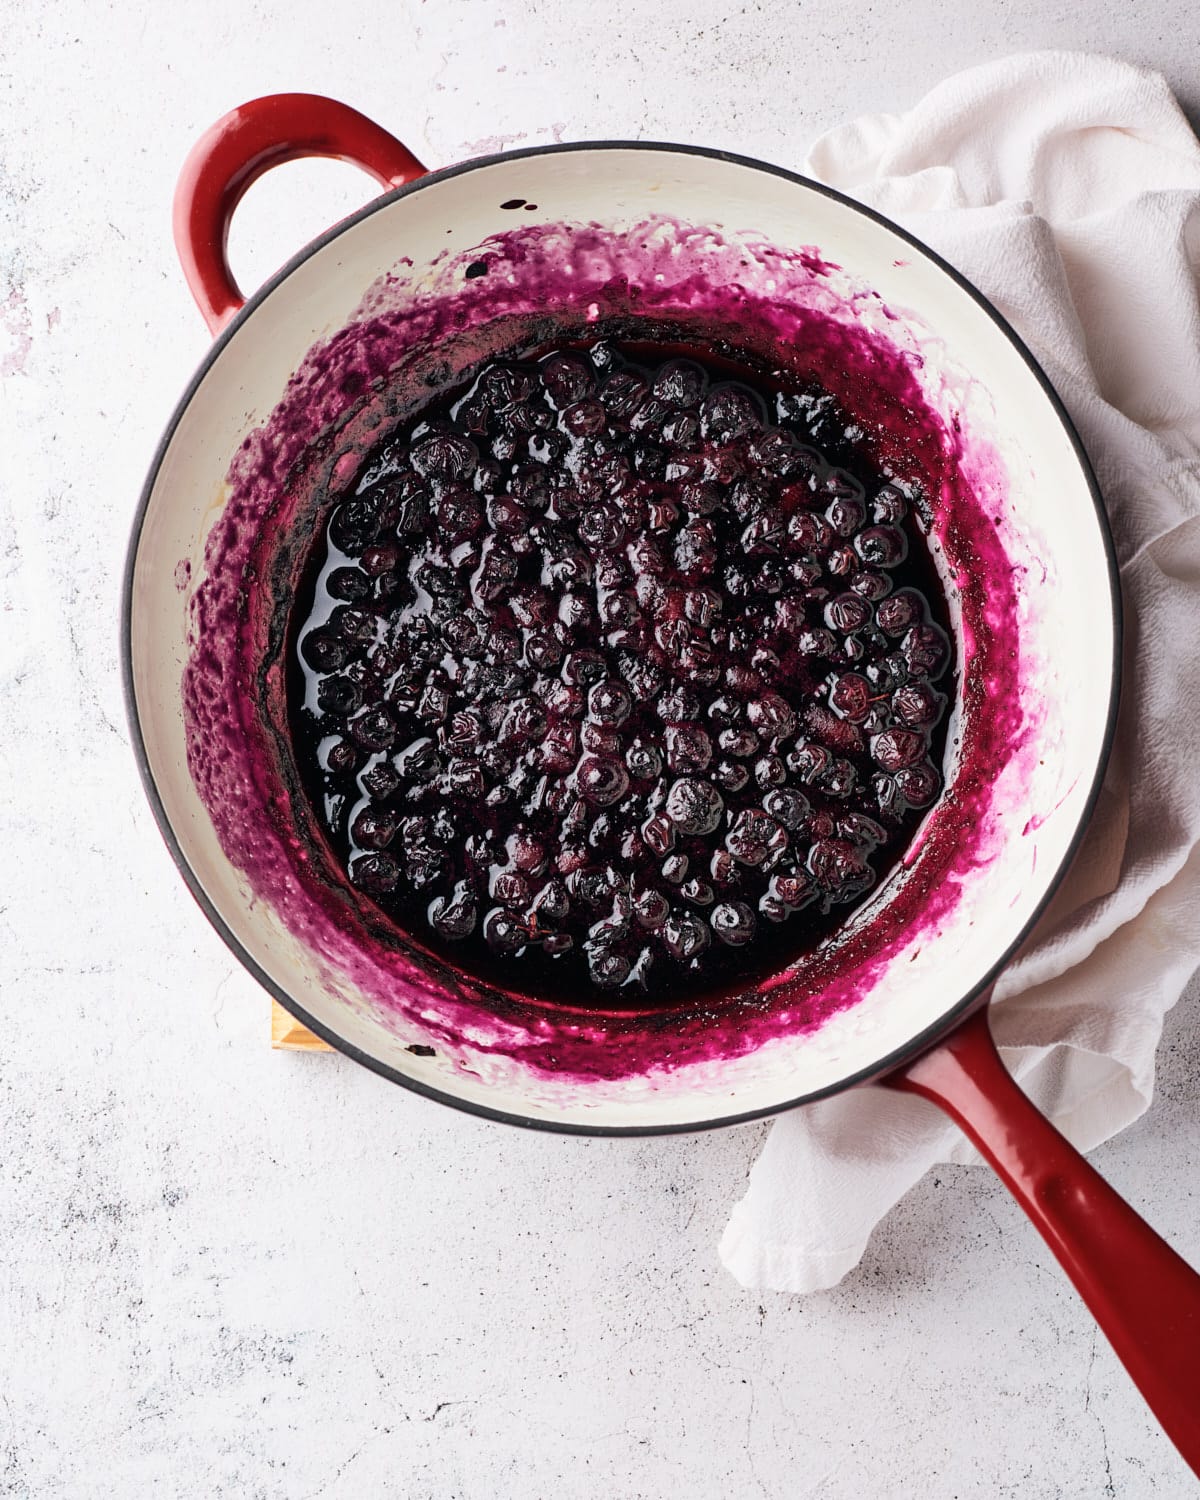 blueberries in saucepan